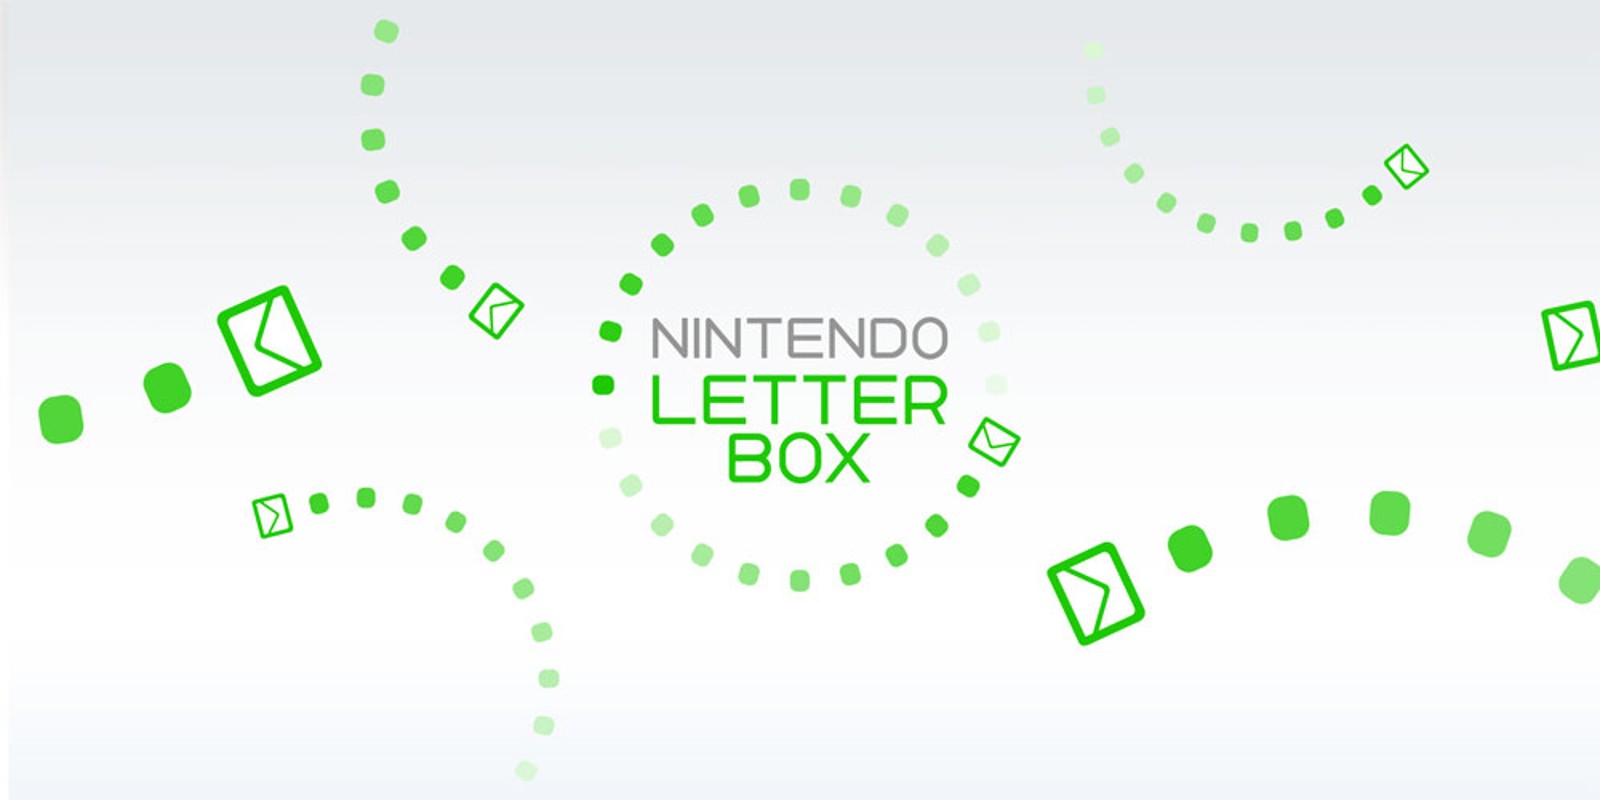 Nintendo Letter Box